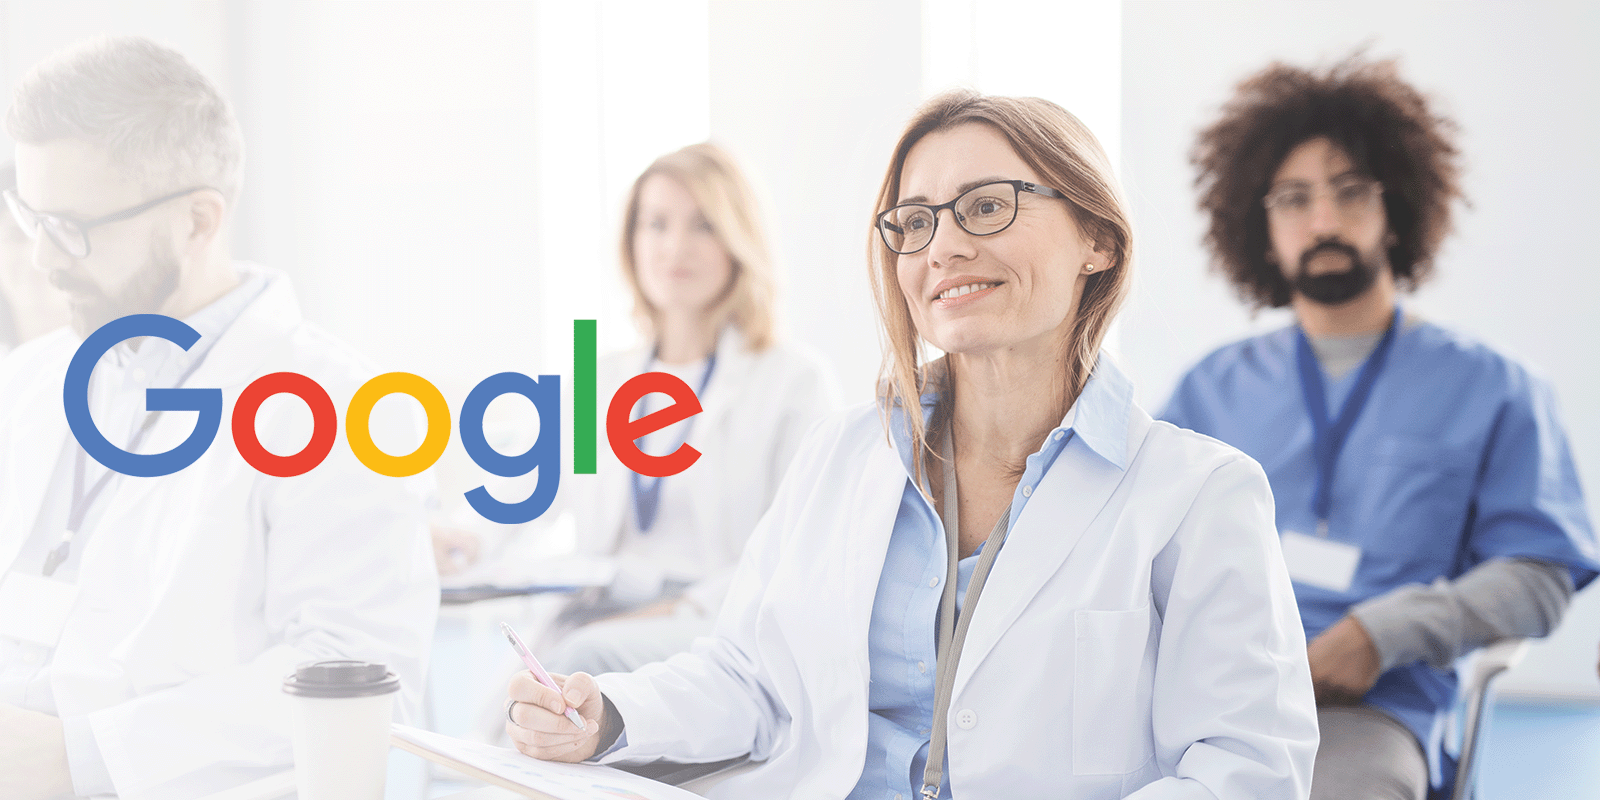 Google wprowadza pakiet sztucznej inteligencji dla medycyny AI MEDIARUN COM GOOGLE DOCTOR MEDICAL V2